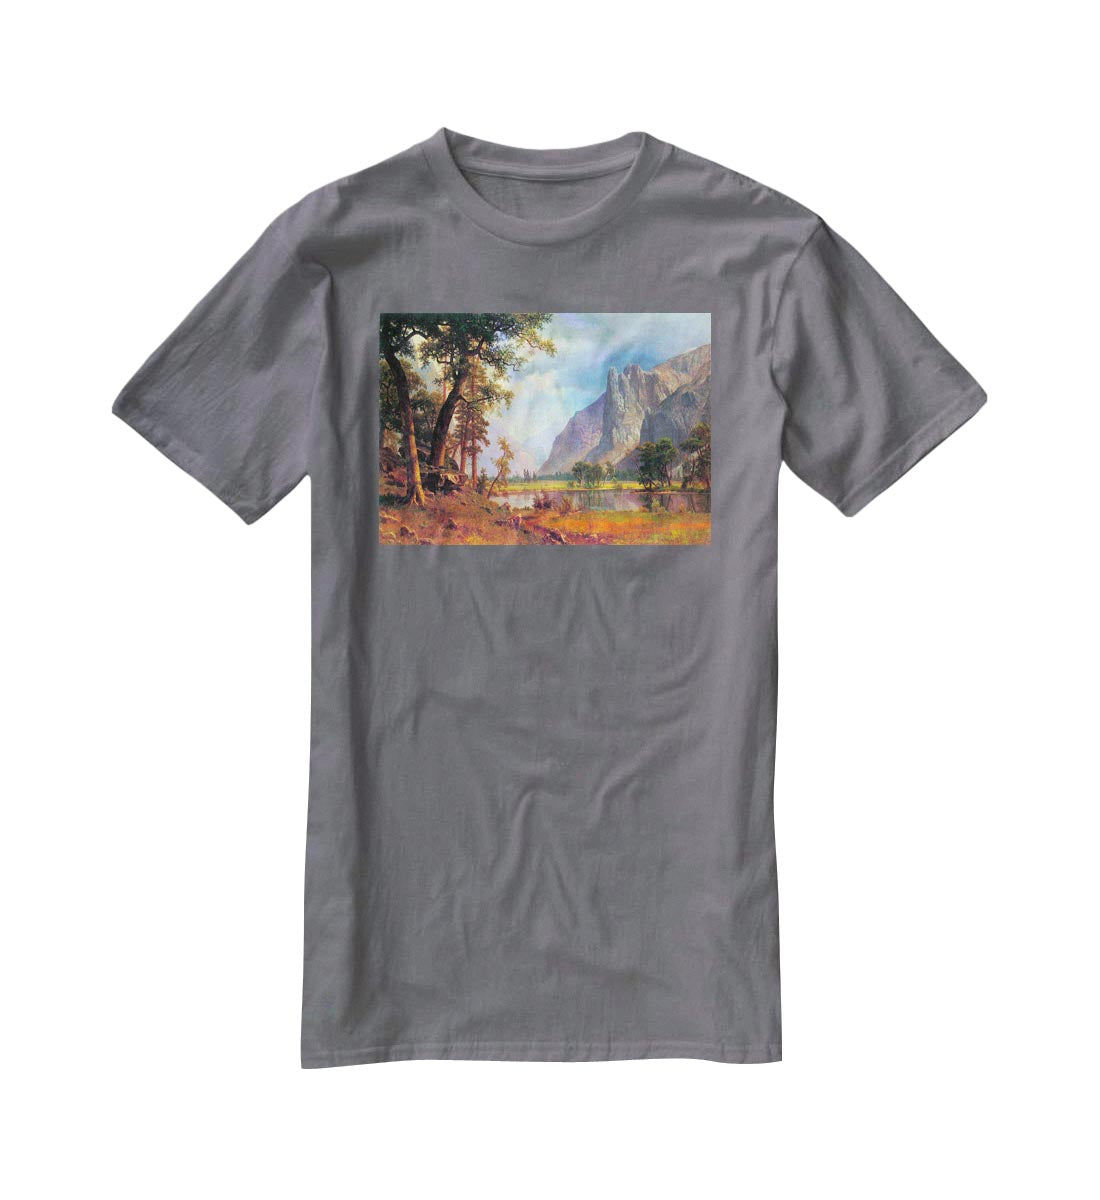 Yosemite Valley 2 by Bierstadt T-Shirt - Canvas Art Rocks - 3